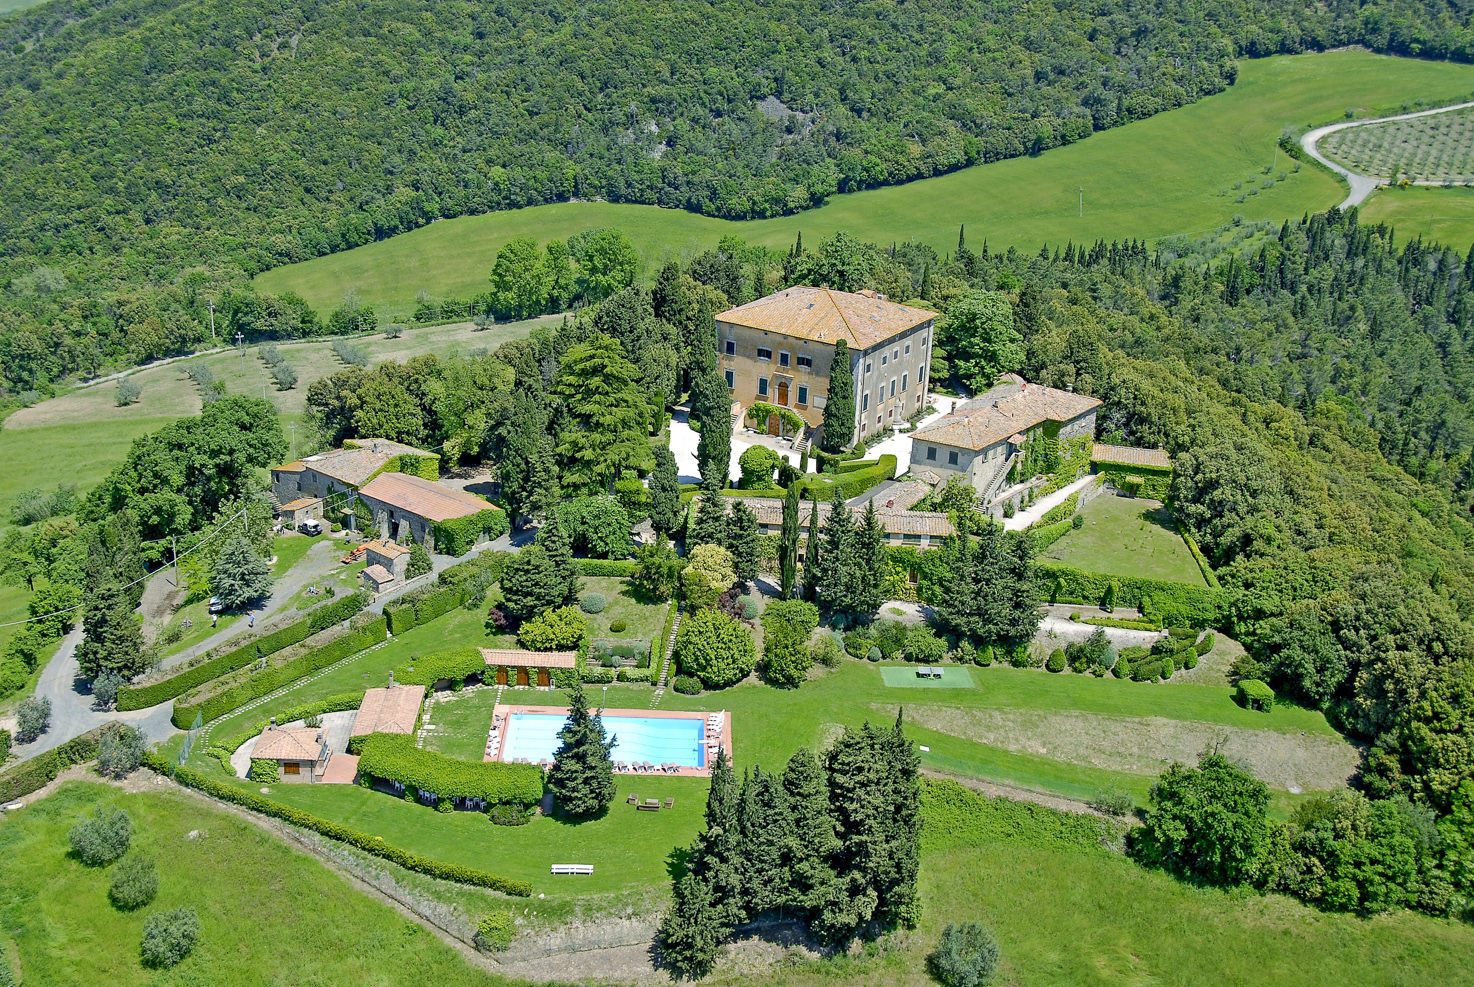 Aerial view of Villa di Ulignano